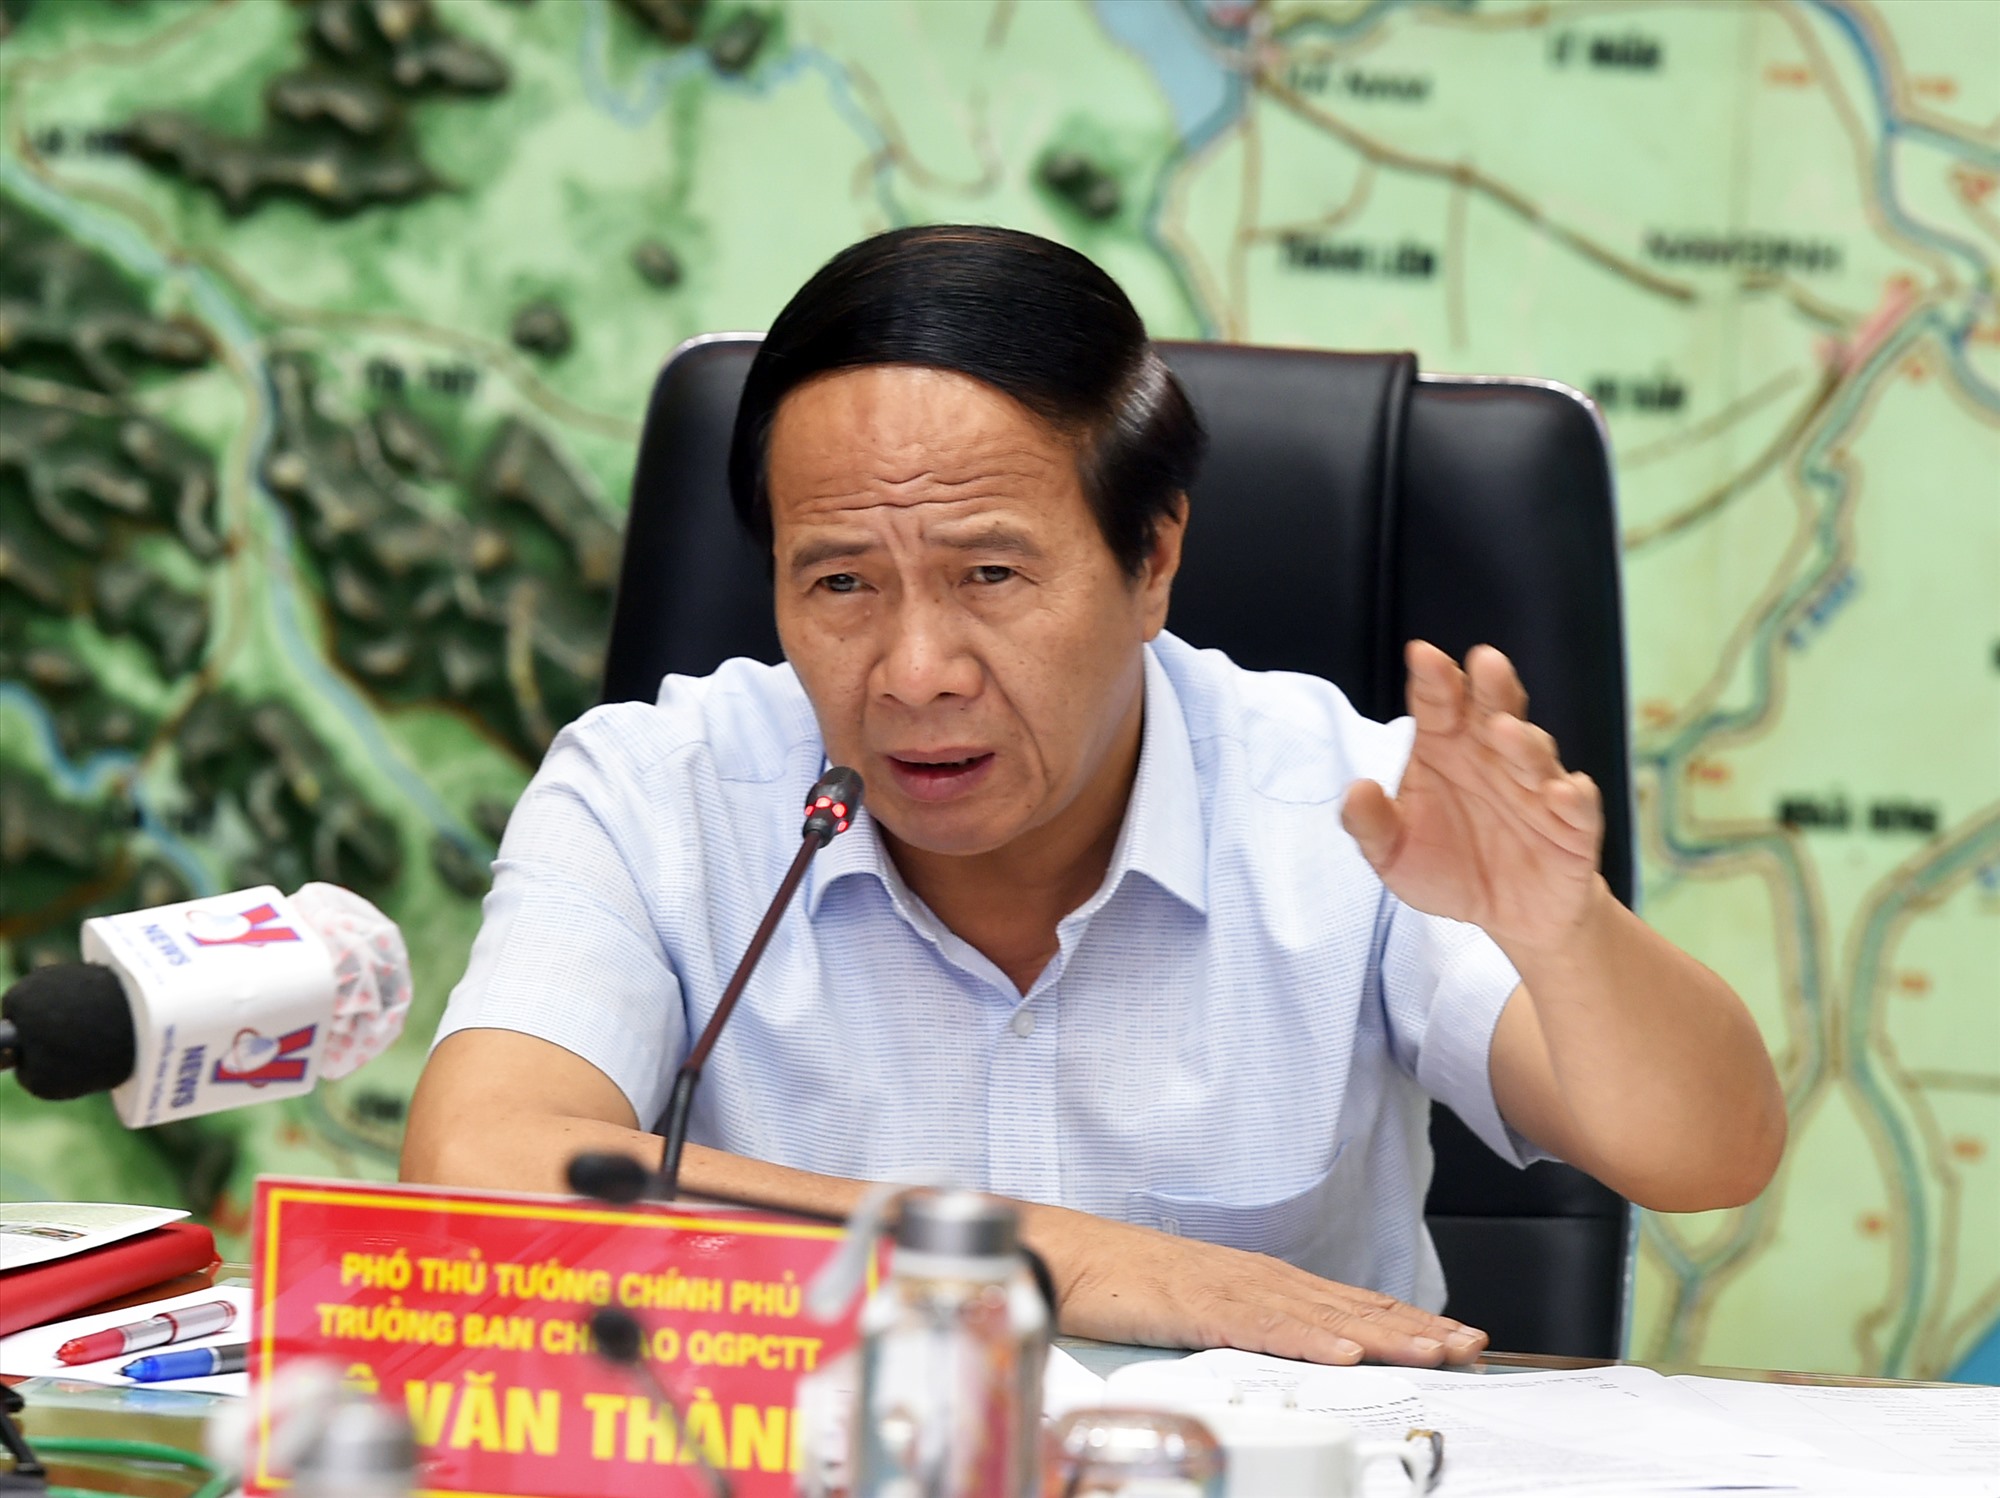 Phó Thủ tướng Lê Văn Thành giao trách nhiệm cho các địa phương đưa ra giải pháp thật cụ thể nhằm đảm bảo an toàn cho đoàn người về quê trong thời điểm mưa bão. Ảnh: VGP/Đức Tuân